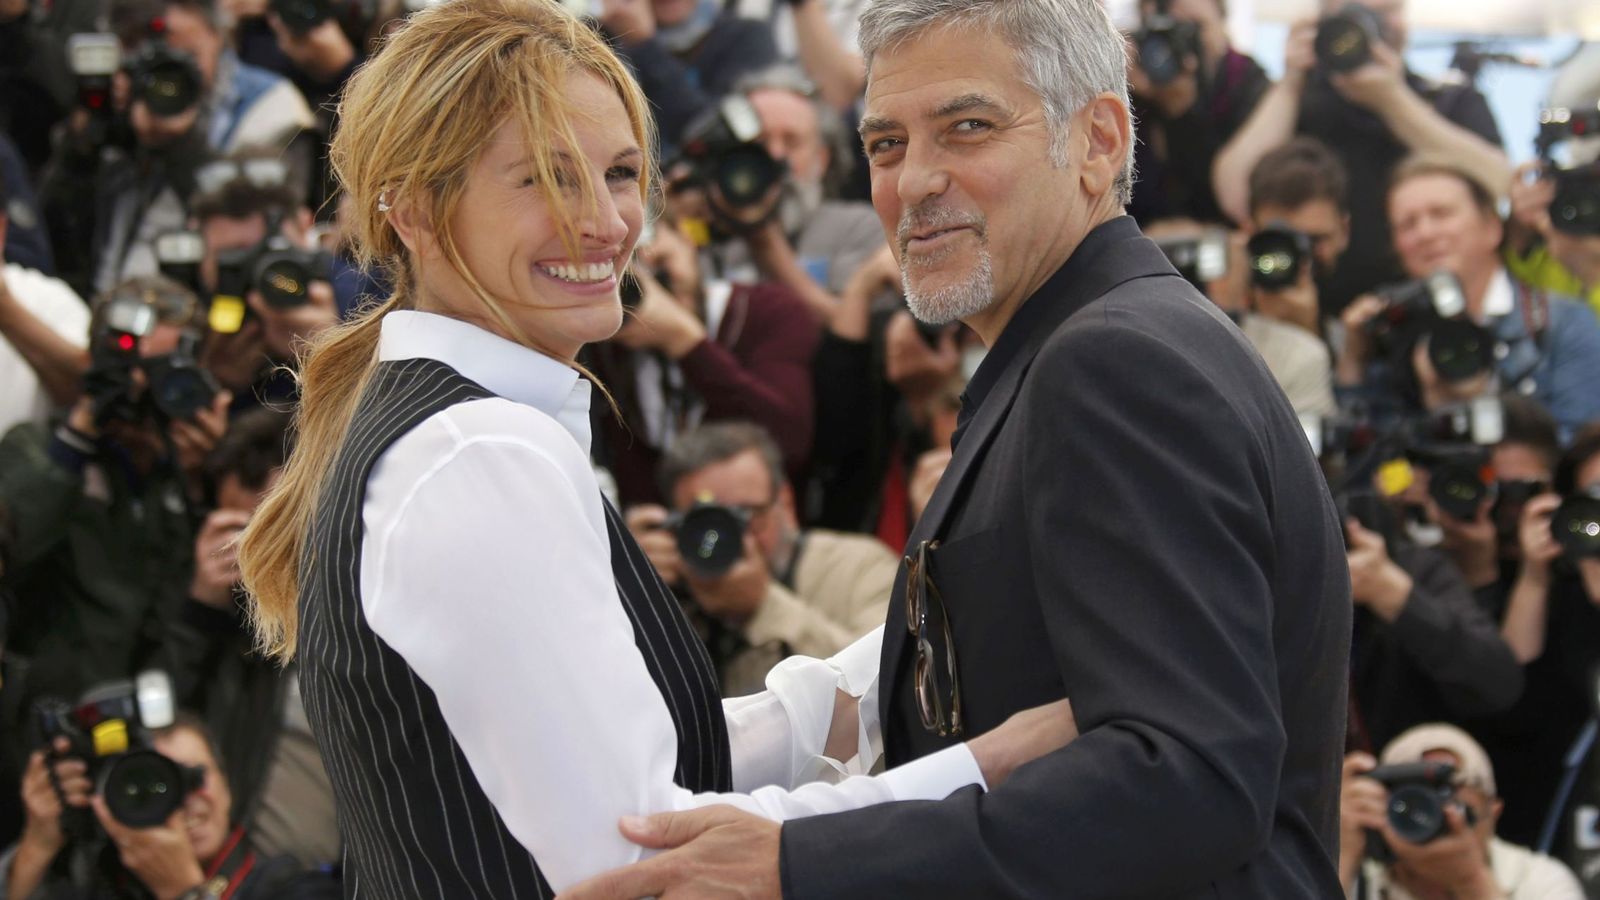 Foto: Julia Roberts y George Clooney en Cannes durante la presentación de 'Money Monster', de Jodie Foster. Foto: Regis Duvignau / Reuters